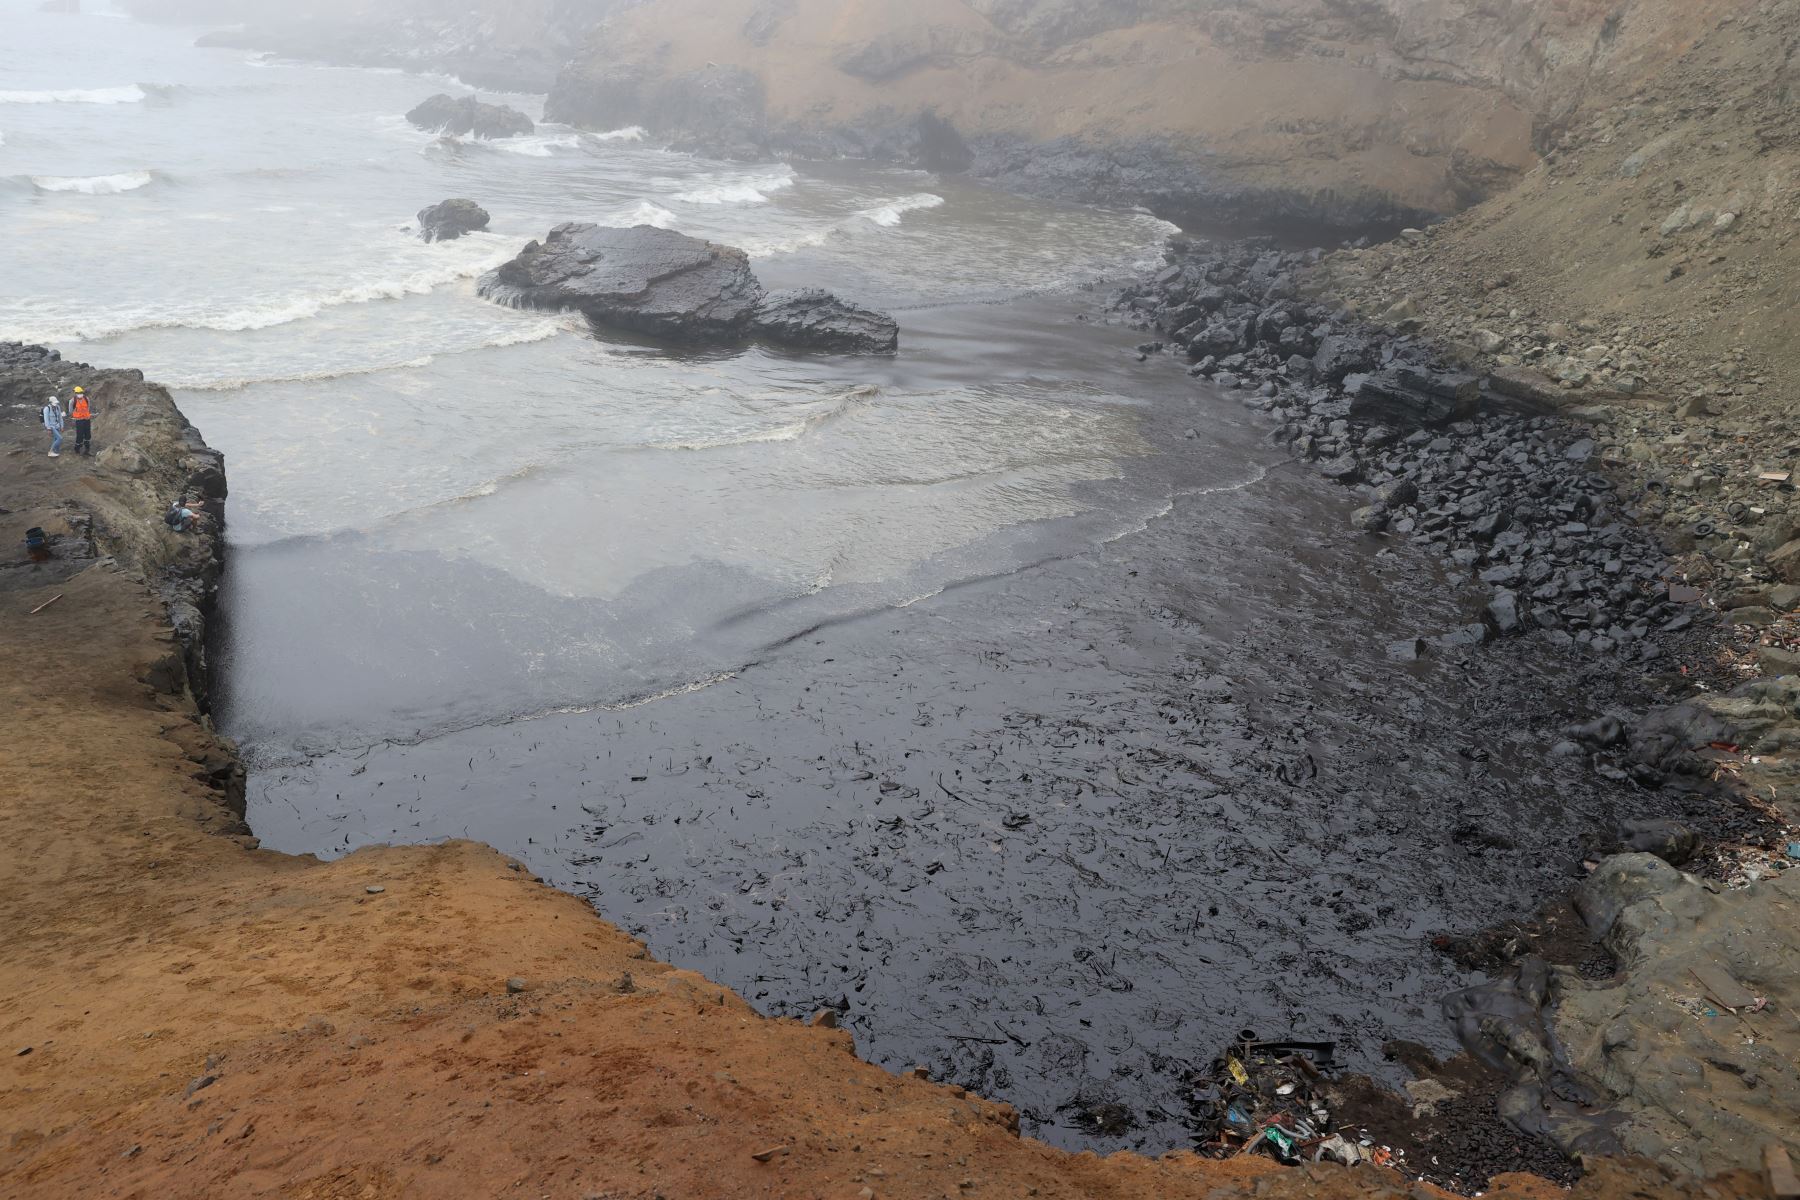 Continúan los trabajos de limpieza en la playa Cavero, ubicada en Ventanilla. Este lugar es uno de los más afectados por el derrame de petróleo ocasionado por la empresa Repsol y que causó un gran impacto ambiental. Foto: ANDINA/Vidal Tarqui